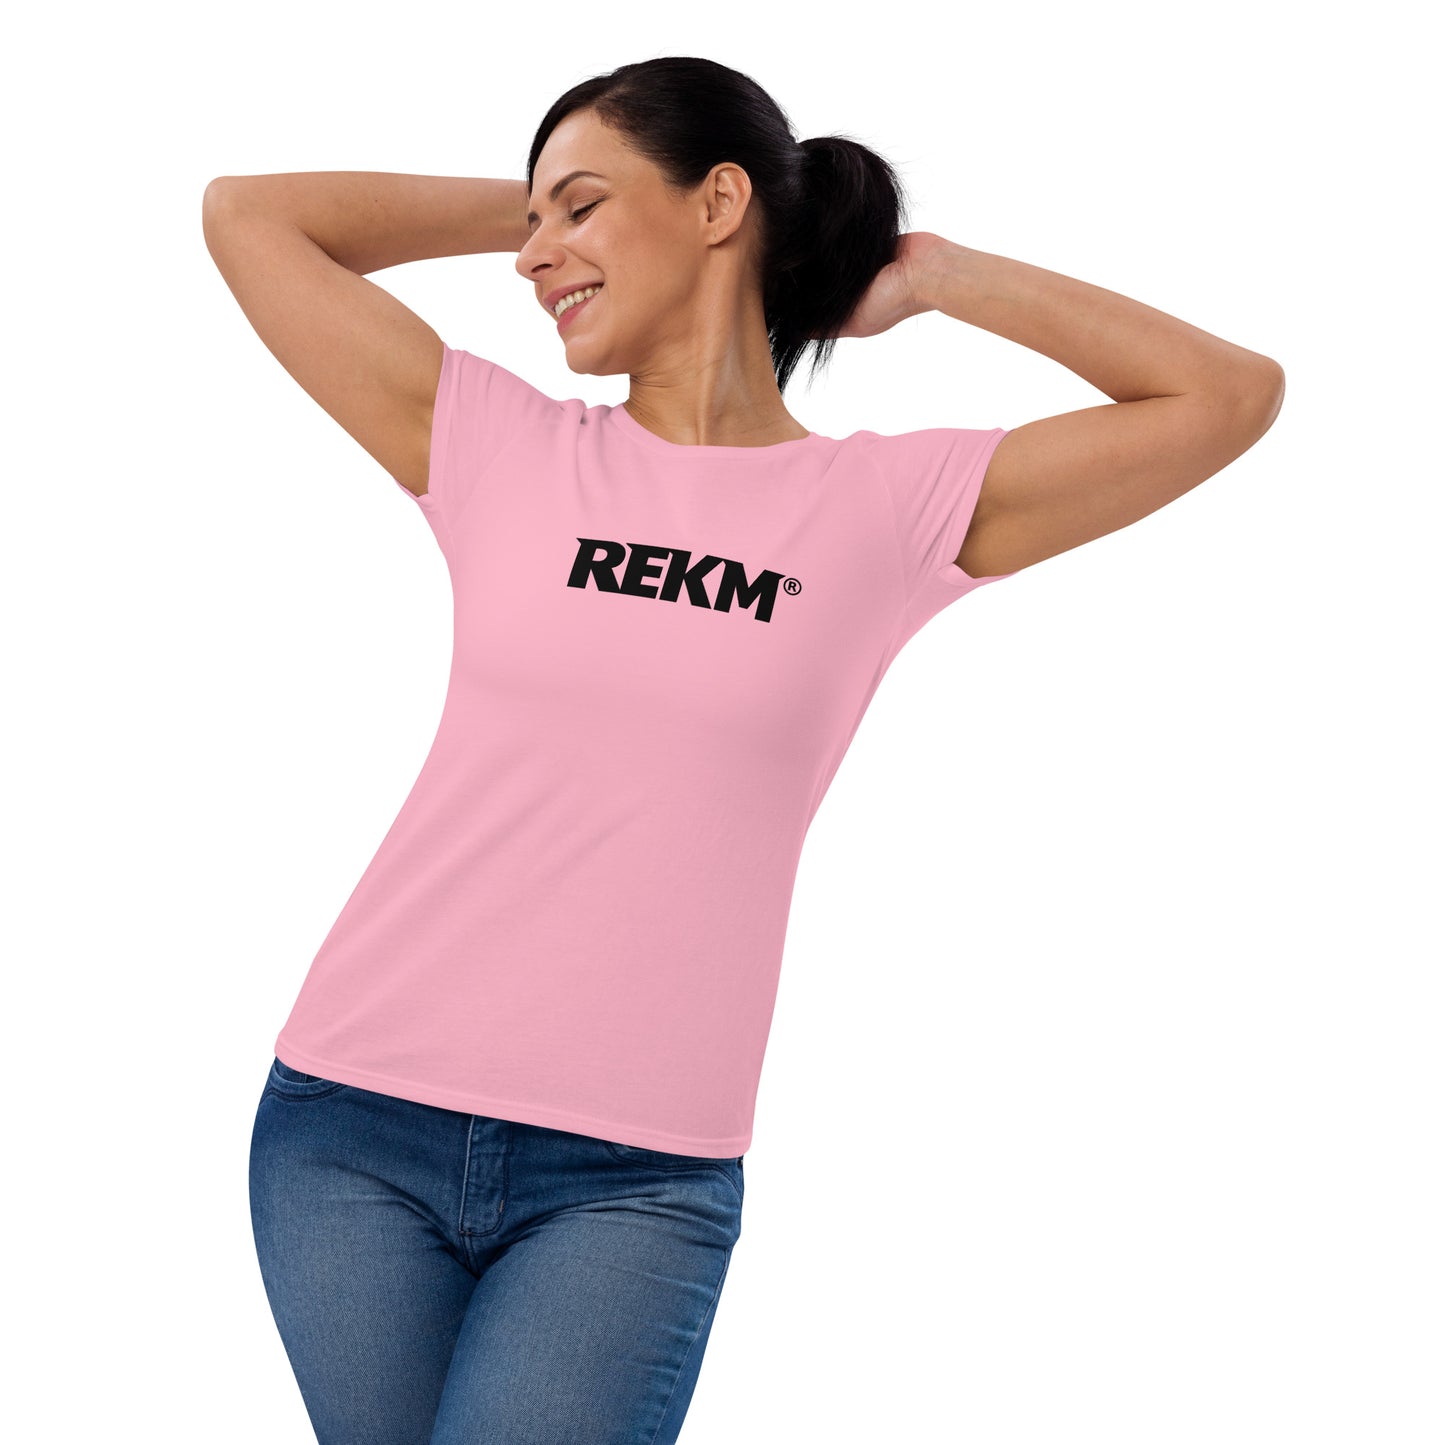 Basic REKM Women's short sleeve t-shirt